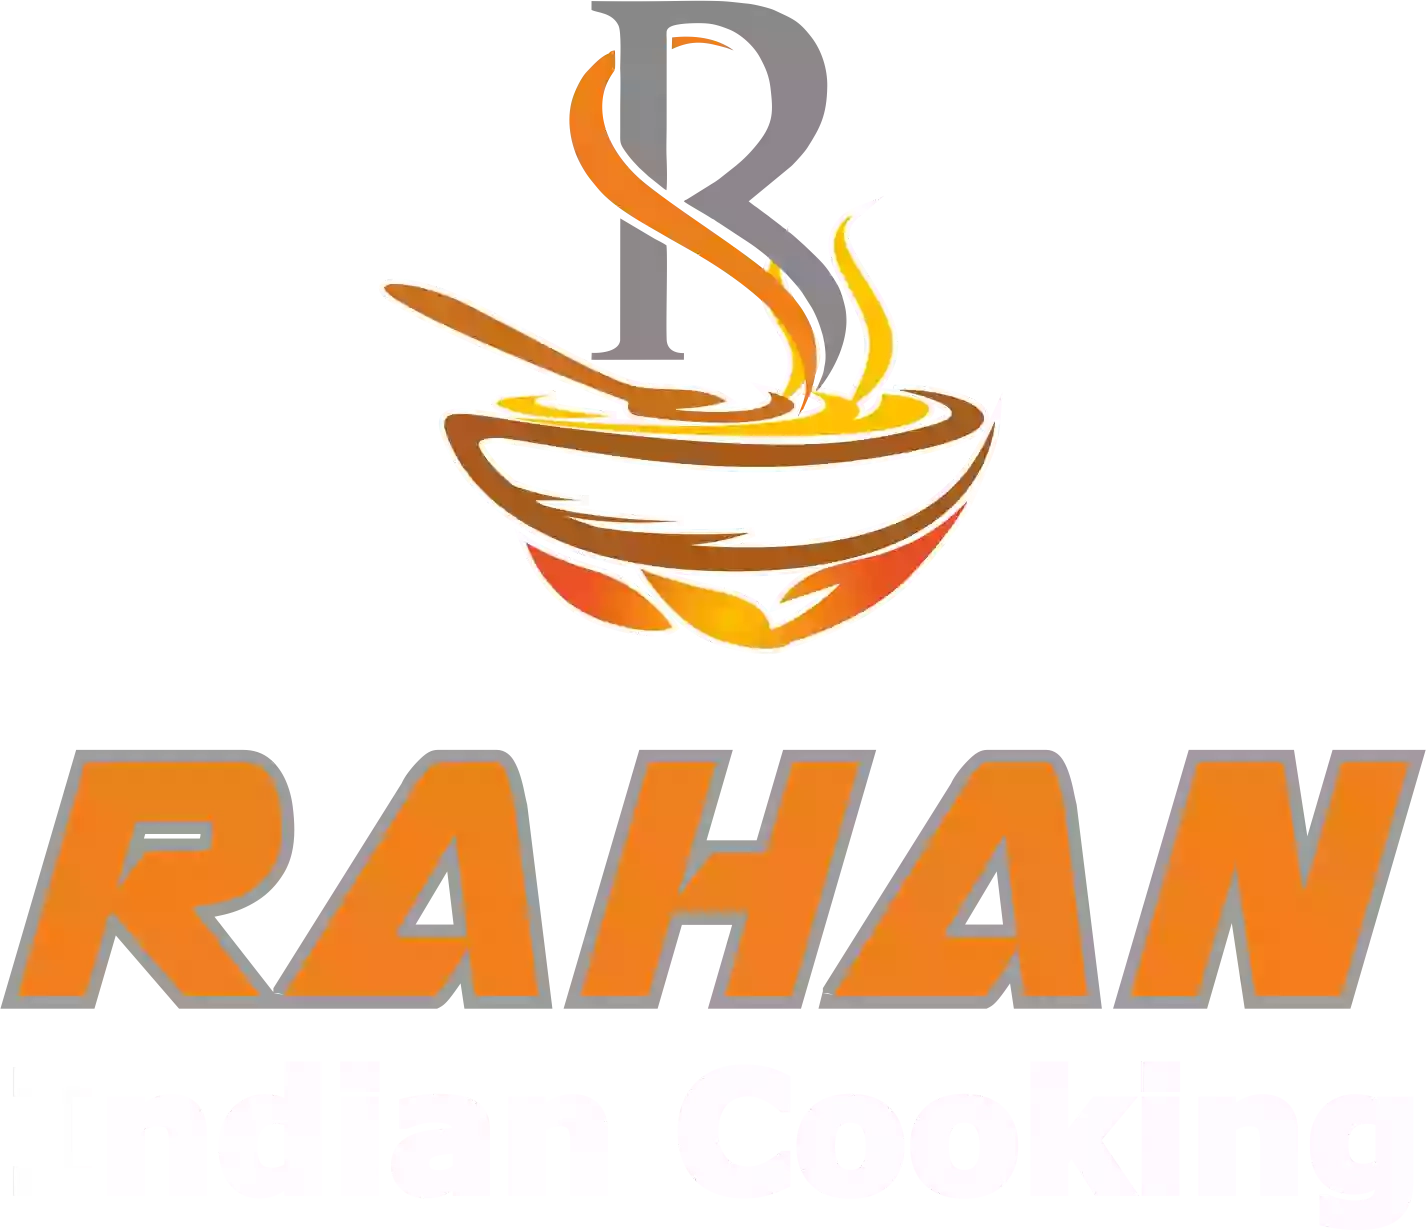 Rahan Indian Cooking